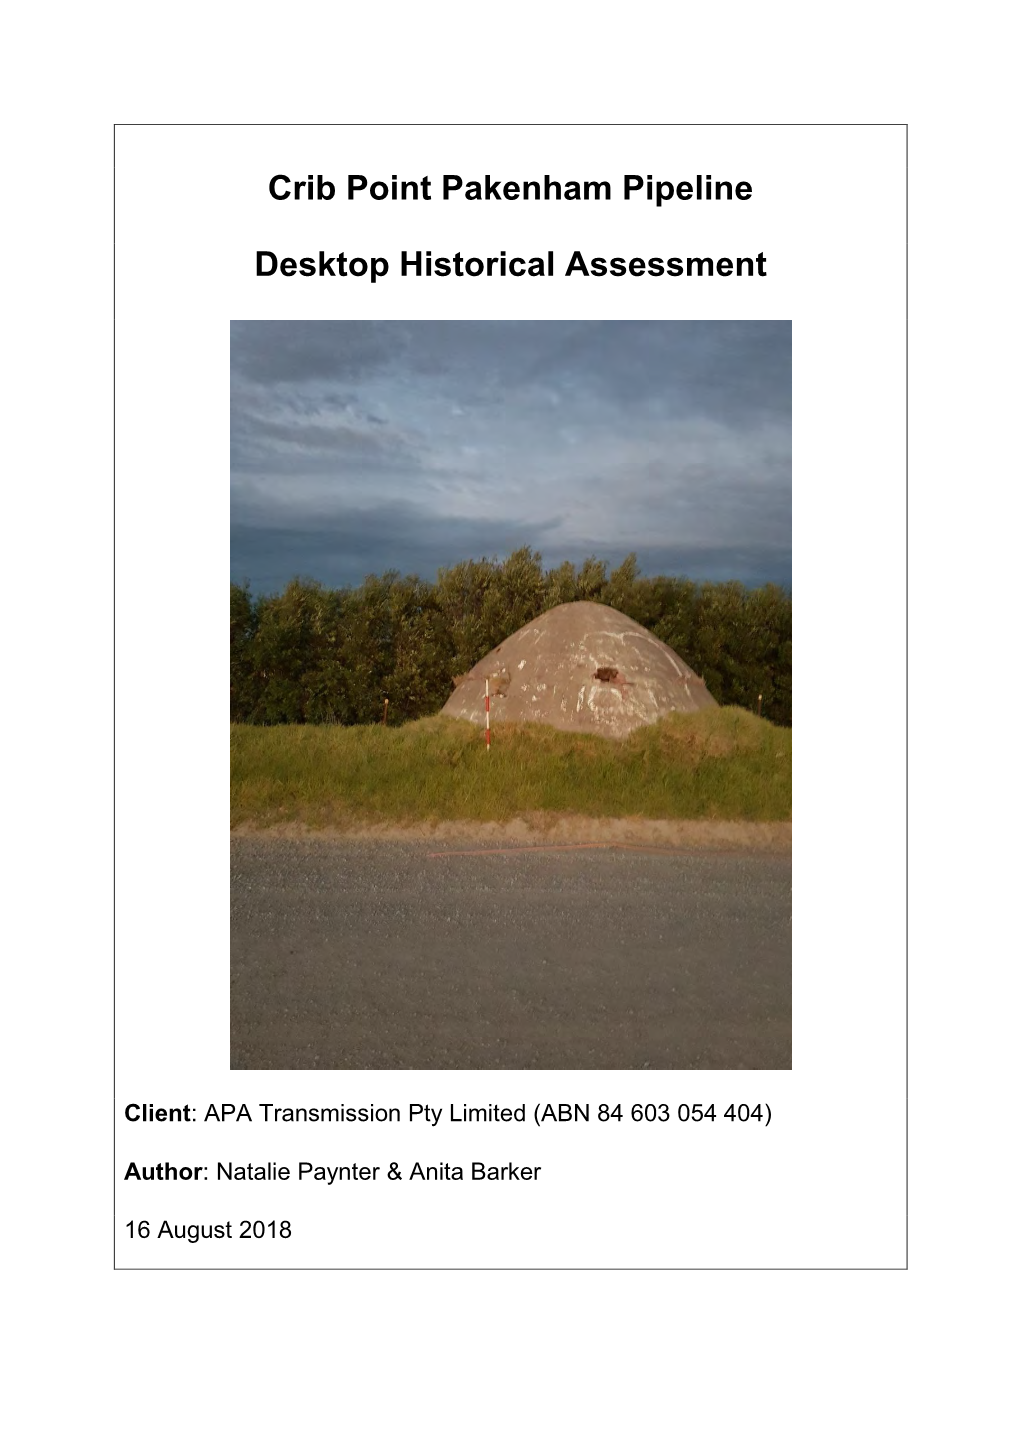 Crib Point Pakenham Pipeline Desktop Historical Assessment